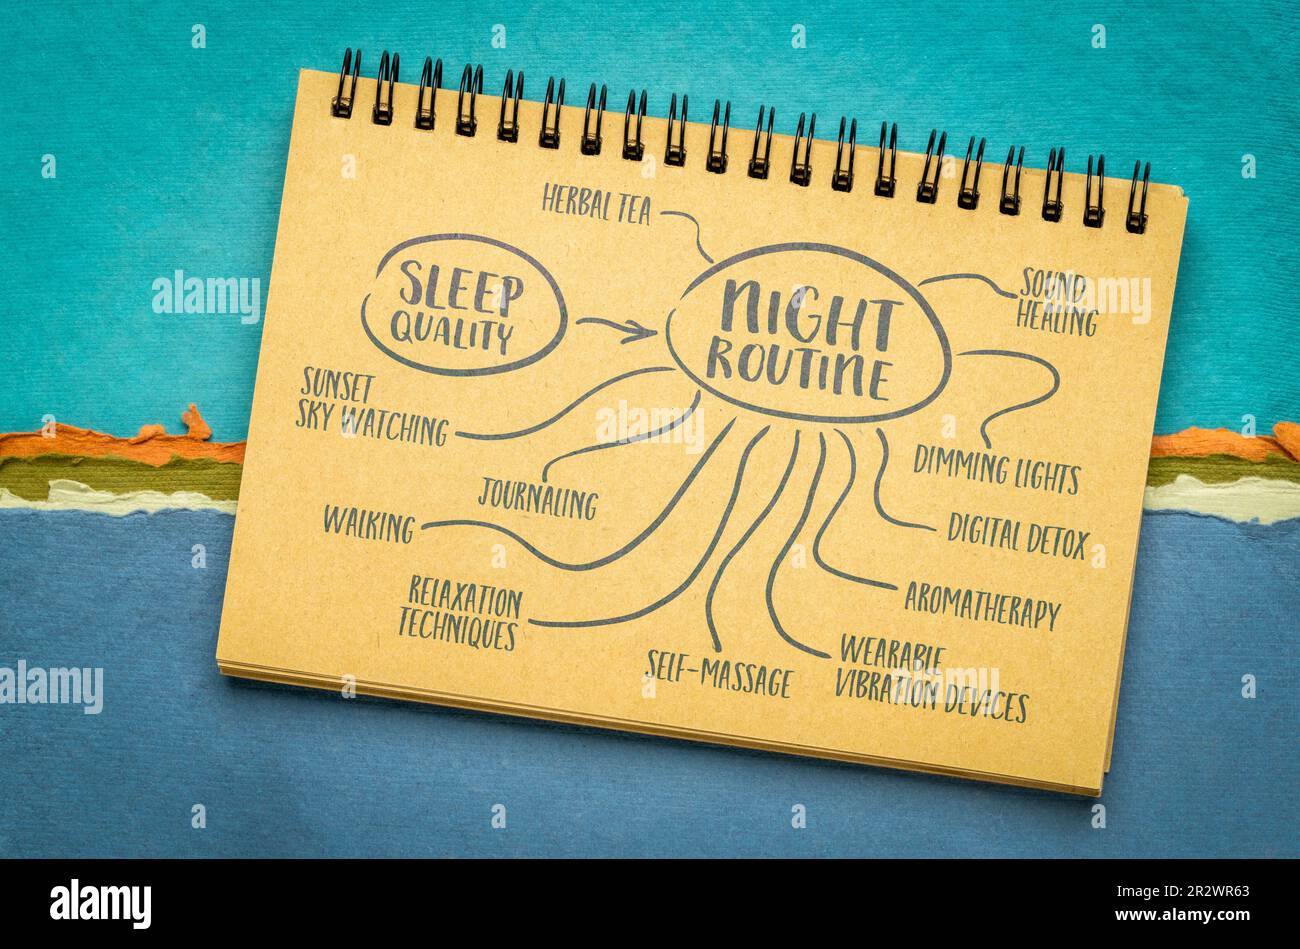 Nachtroutine für Schlafqualität - Mindmap-Skizze in einem Notizbuch, gesunder Lebensstil, Selbstpflege und persönliches Entwicklungskonzept Stockfoto